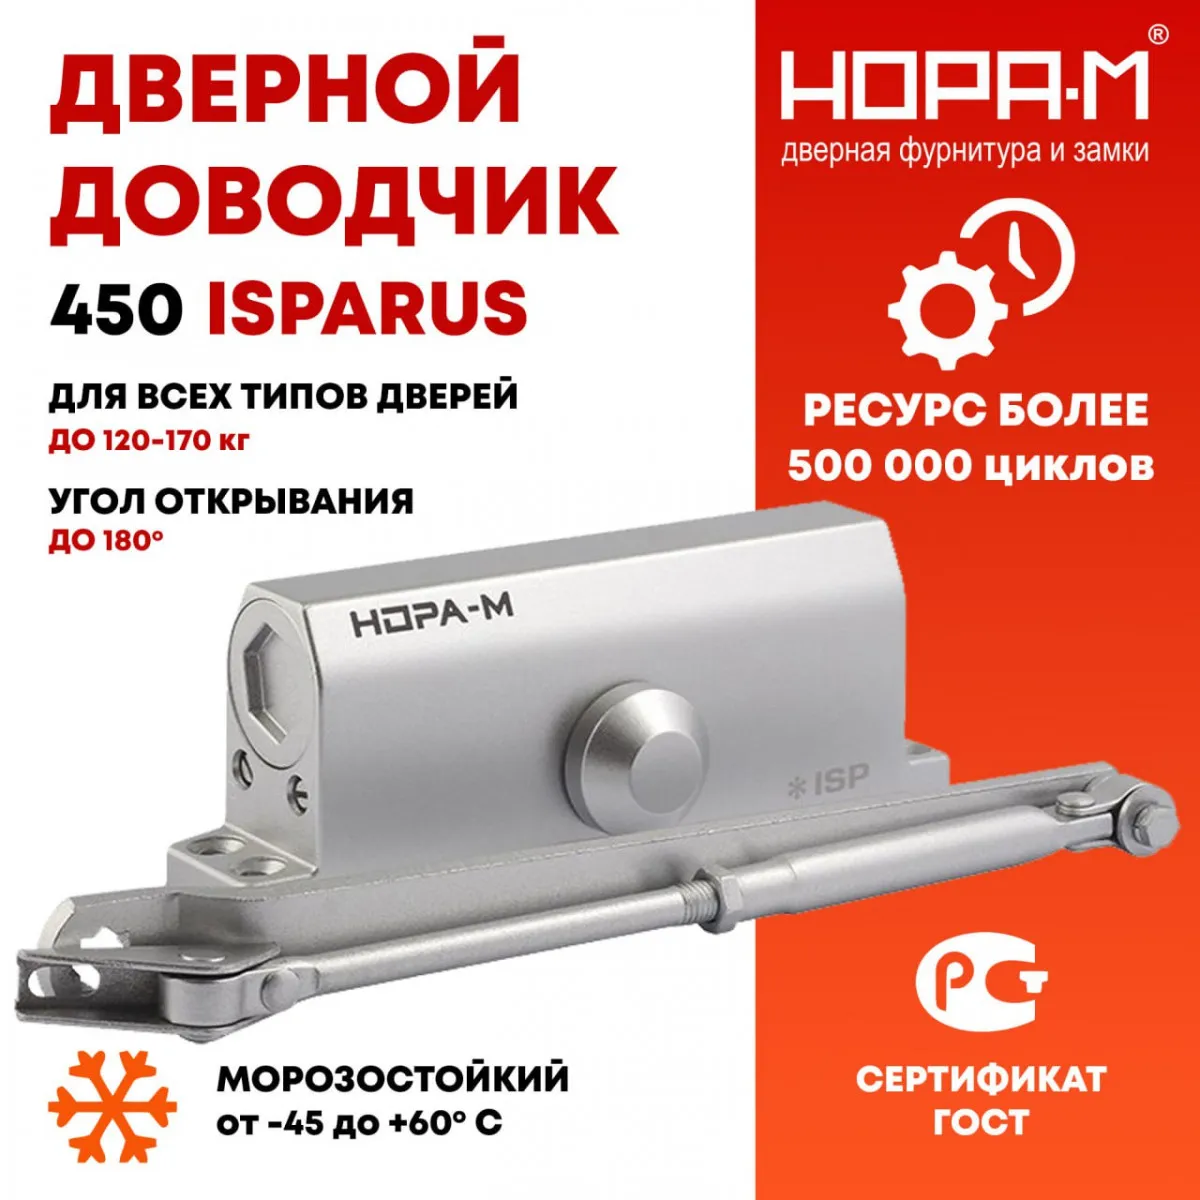 Rossiyaning NORA M kompaniyasidan 120 dan 170 kg gacha bo'lgan eshikni yopishtiruvchi 450 ISPARUS.#1